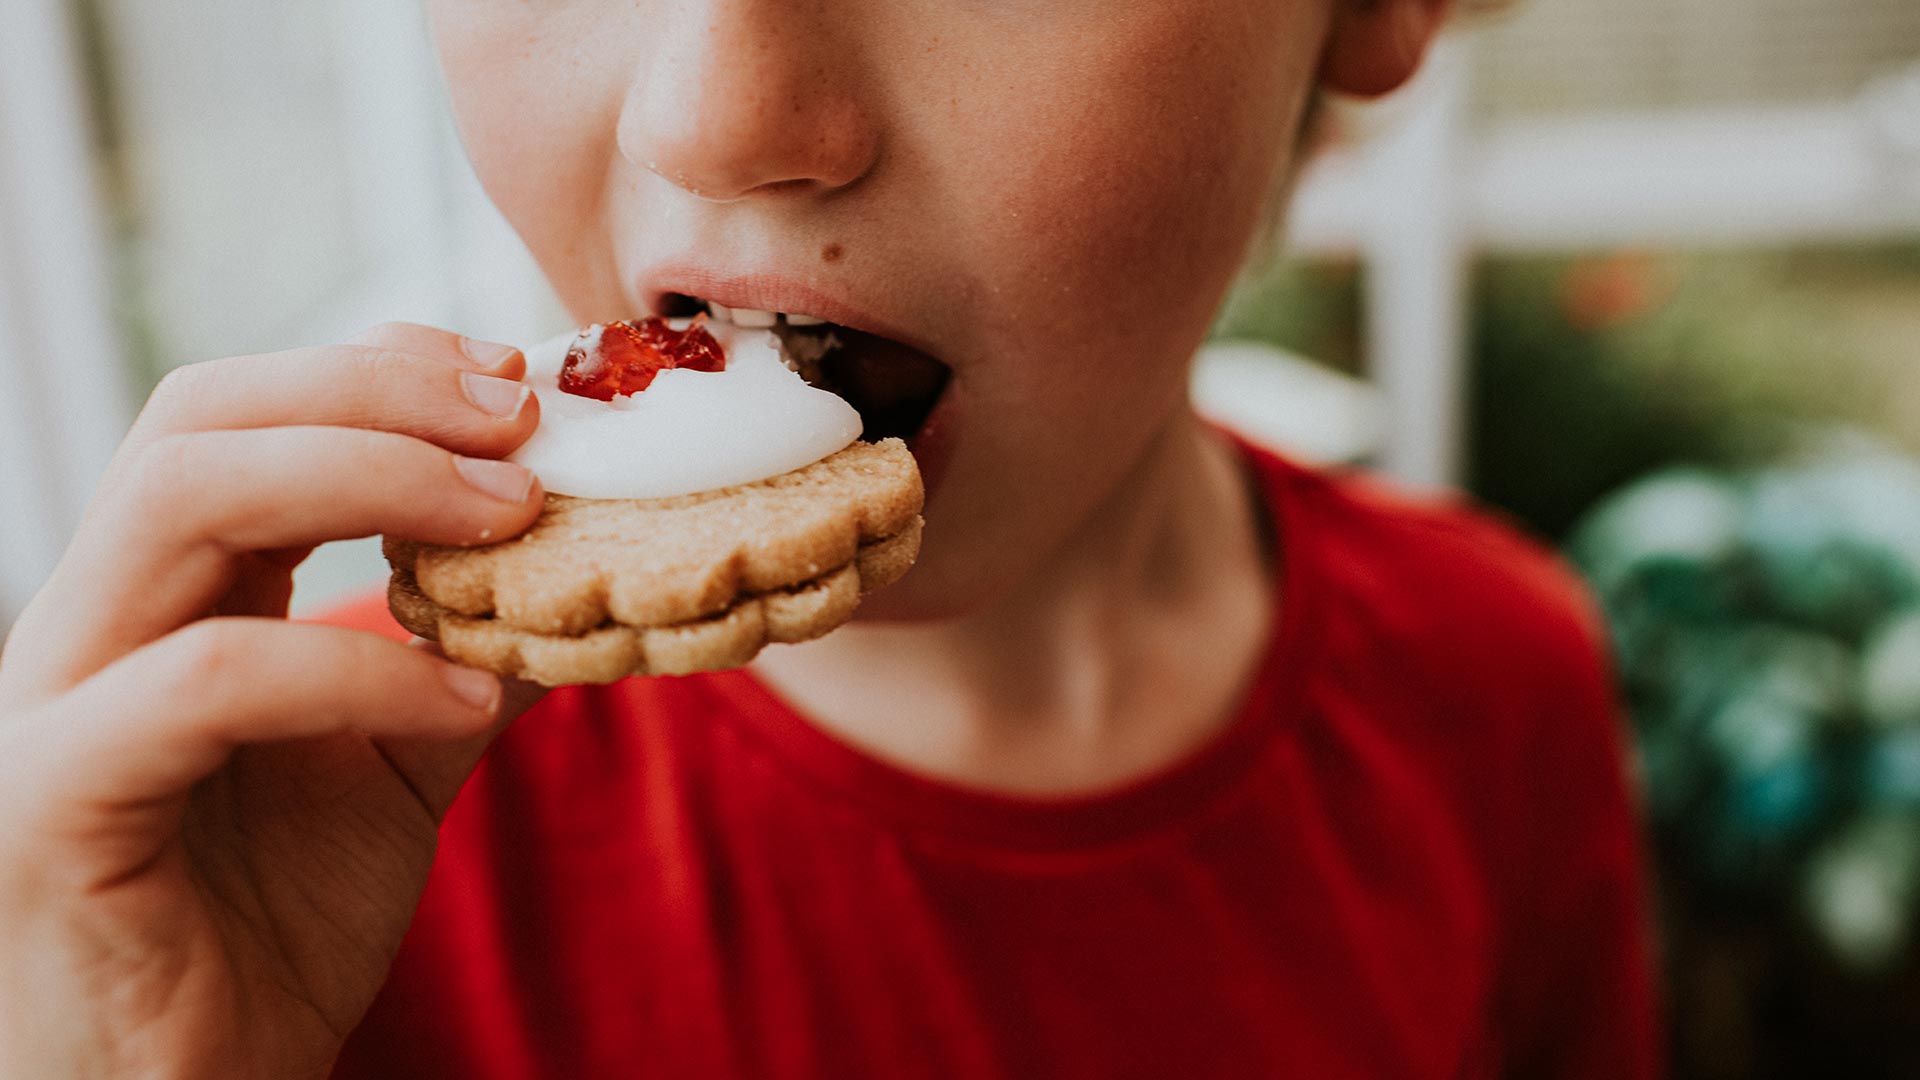 Las tasas de obesidad infantil crecen al ritmo del aumento del consumo de alimentos procesados (Getty Images)